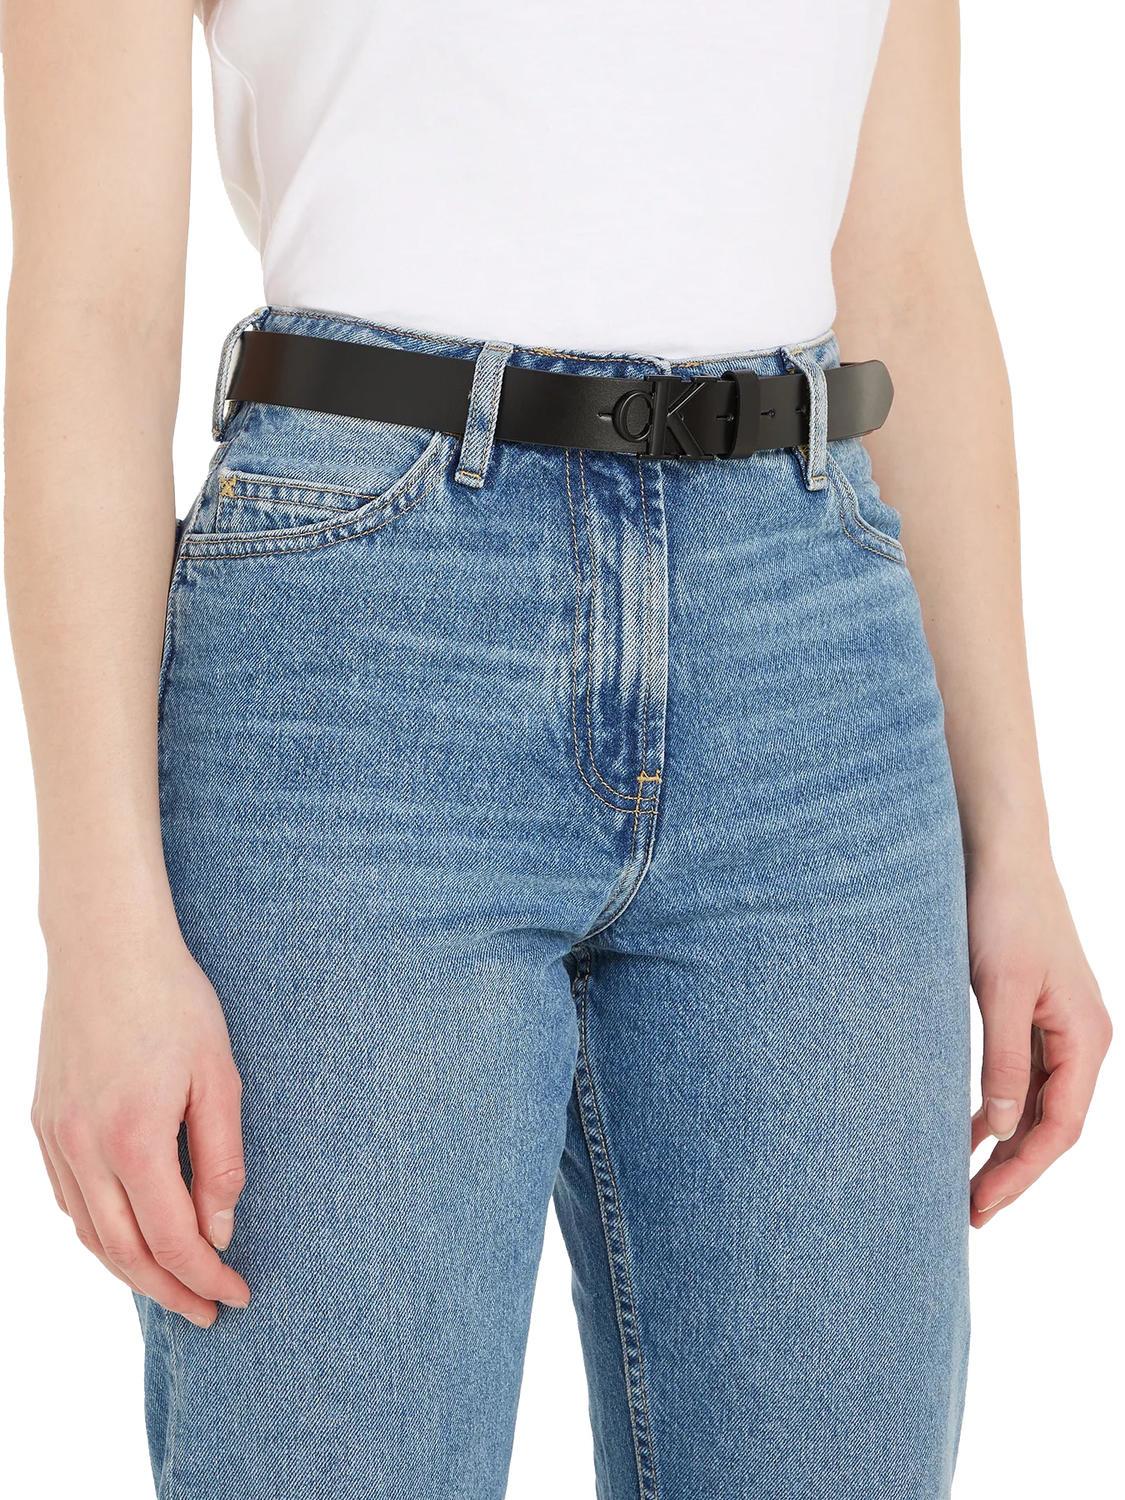 Calvin Klein Ck Schwarz- Einkaufen Round 3.0 Mono Jeans Outlet-Preisen! Zu Ledergürtel